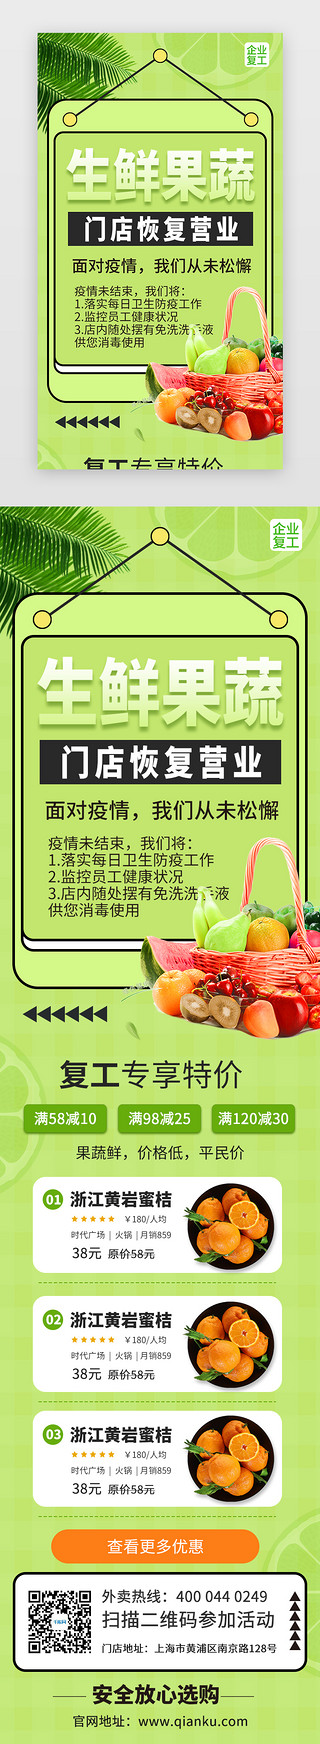 生鲜水果促销海报UI设计素材_生鲜果蔬复工促销活动H5